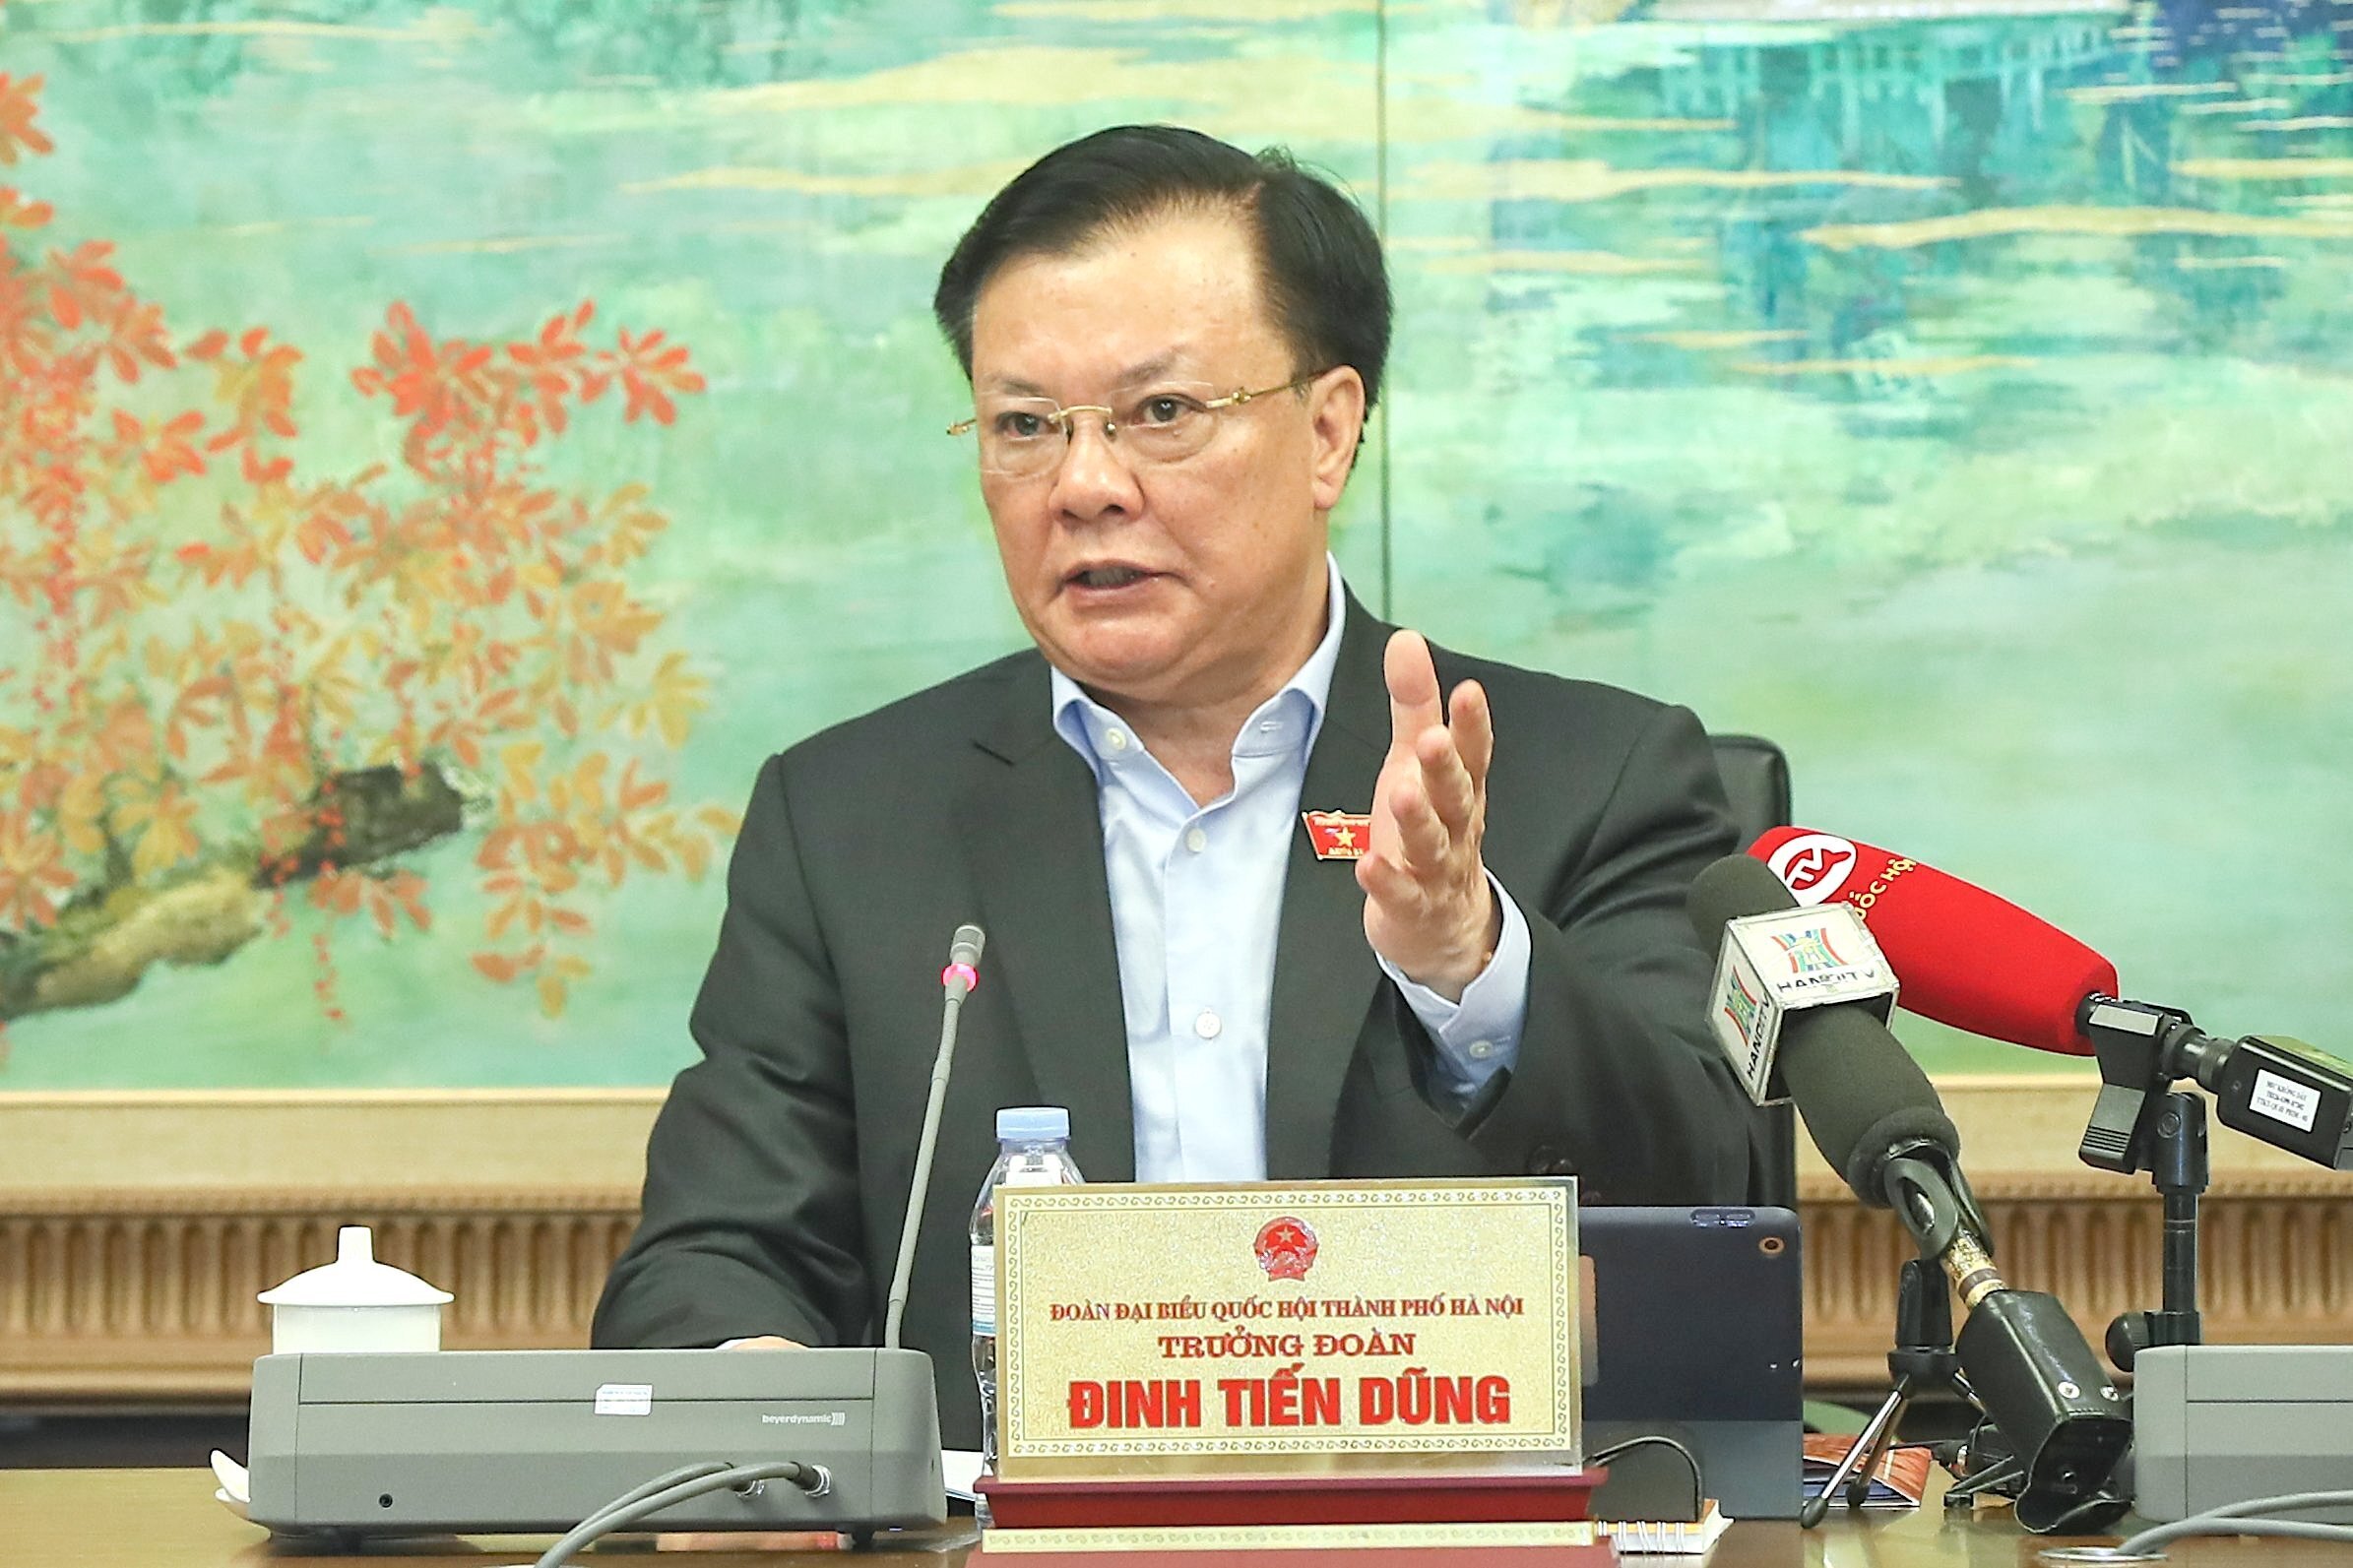 Bí thư Hà Nội thừa nhận Thủ đô gặp khó di dời các trường đại học, bệnh viện